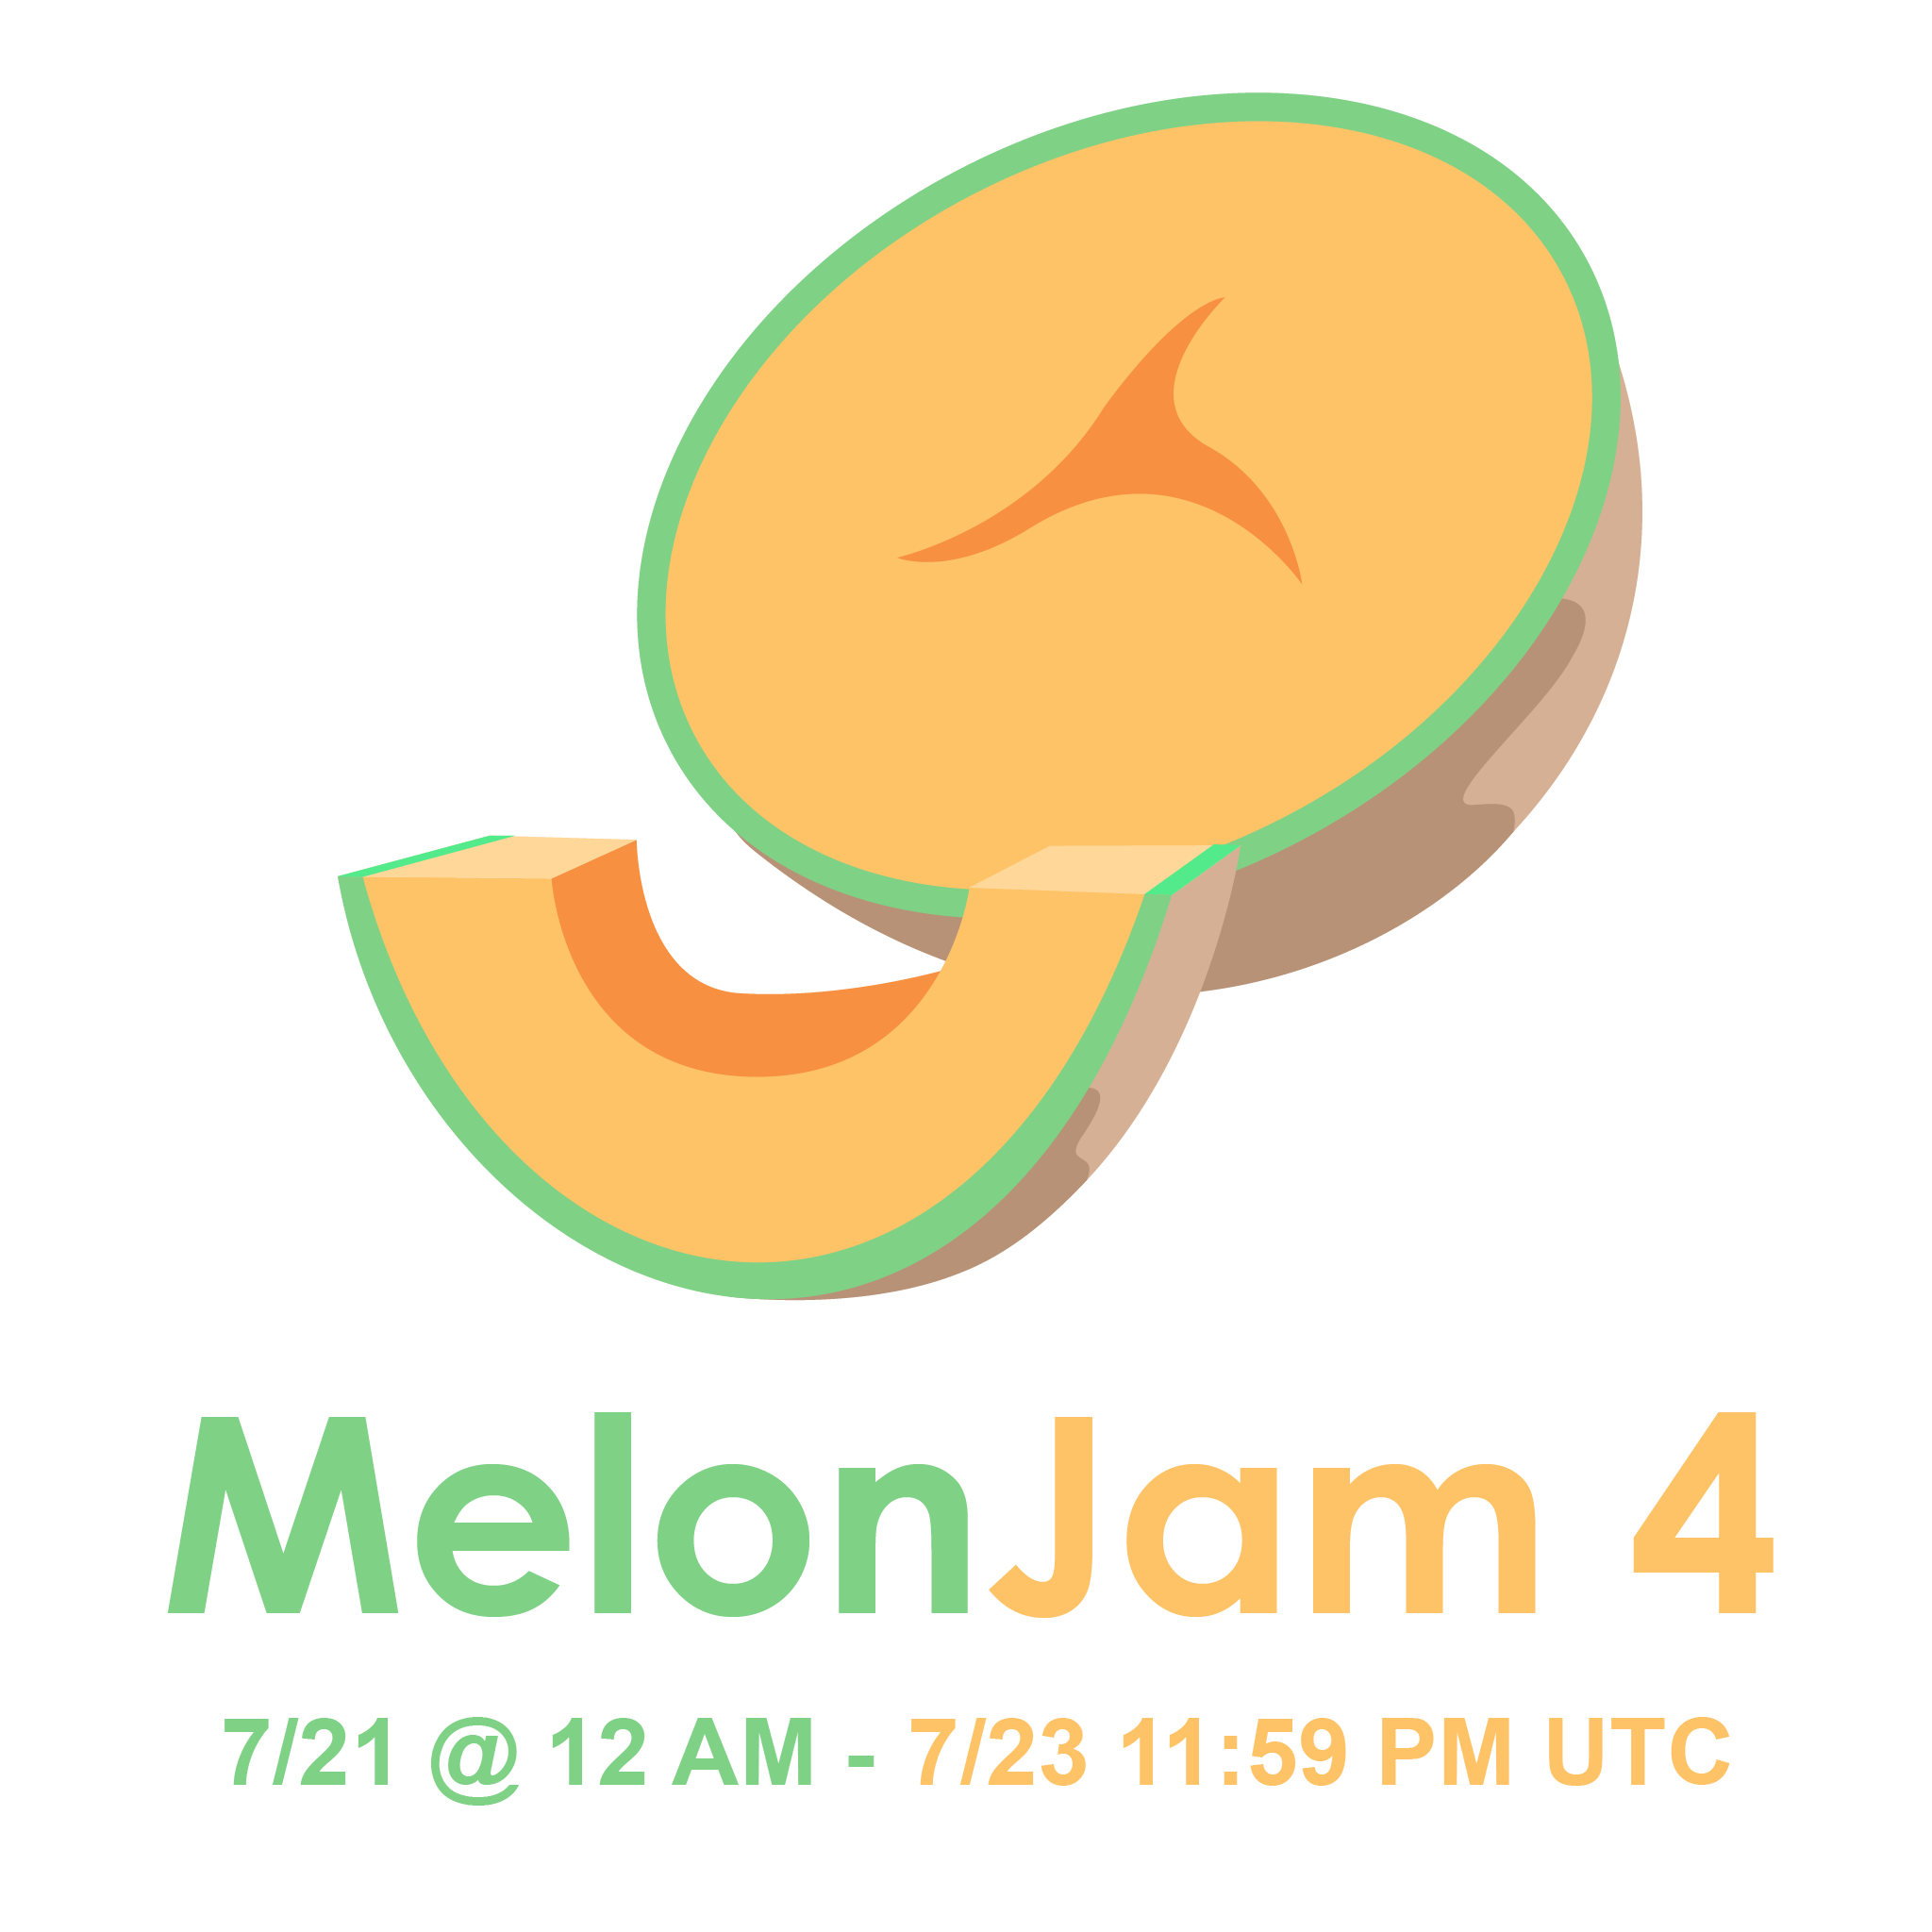 MelonJam